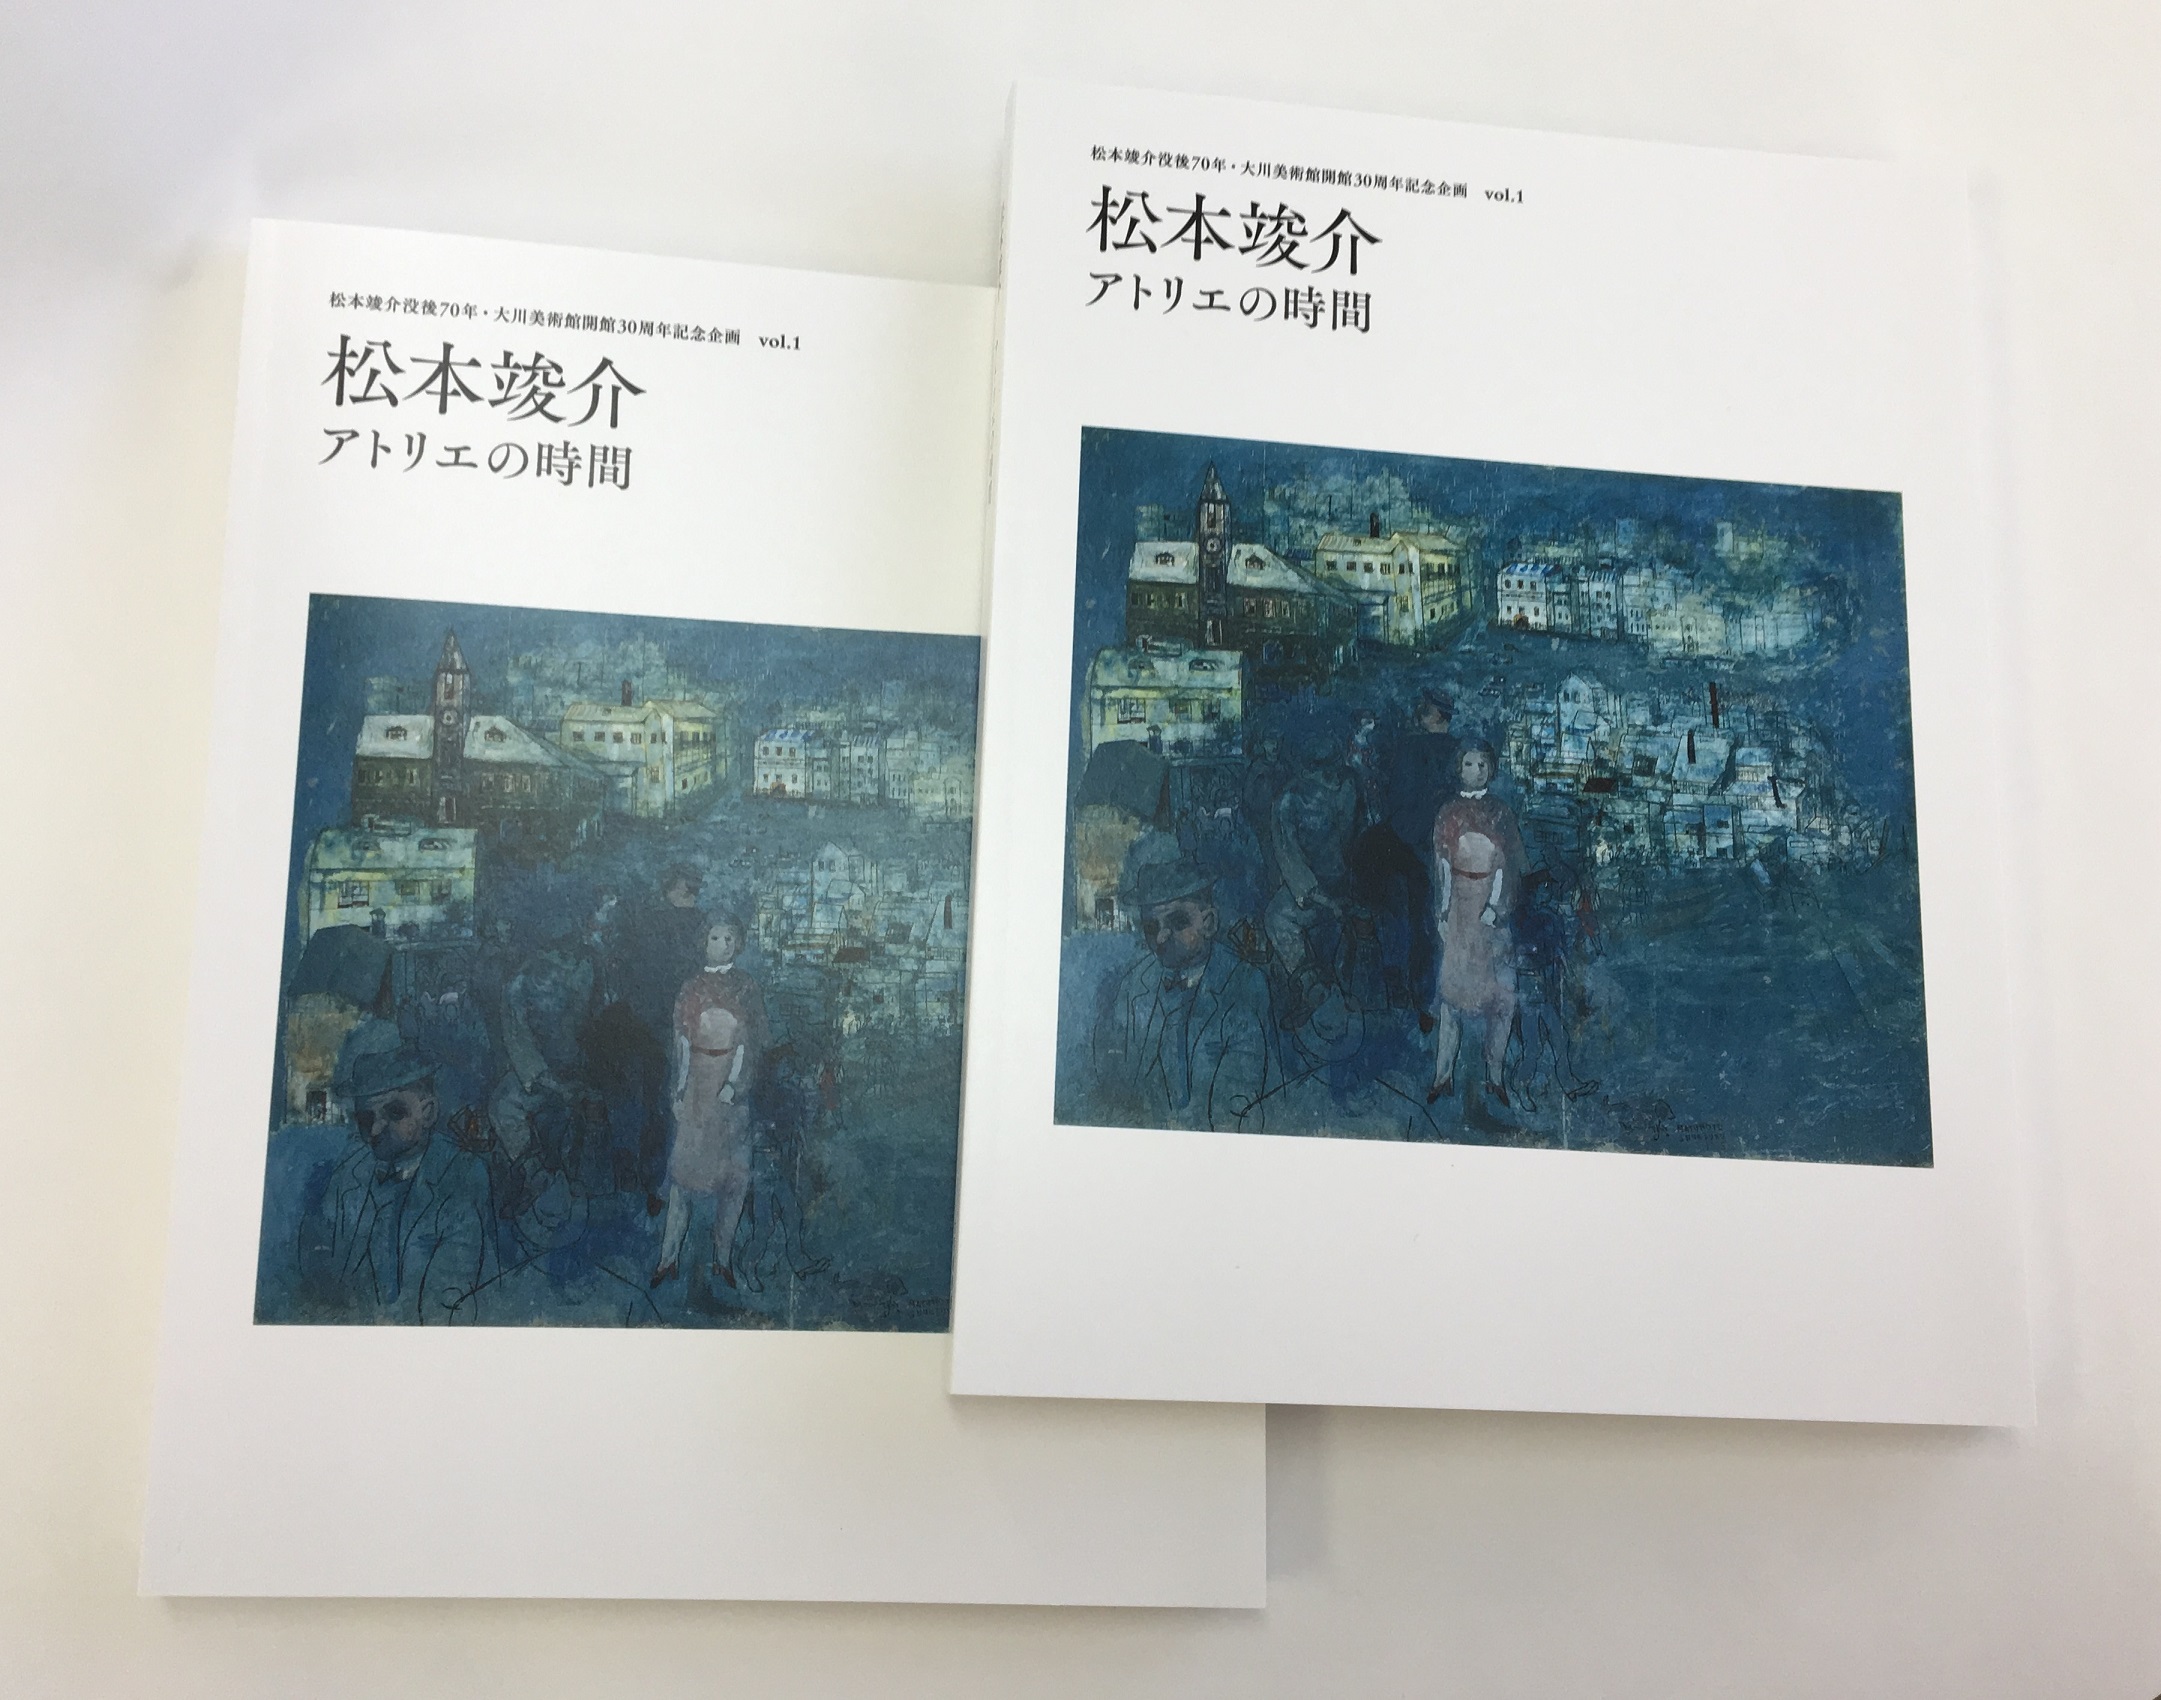 「松本竣介アトリエの時間」の
カタログは引き続き
  お買い求めいただけます。

